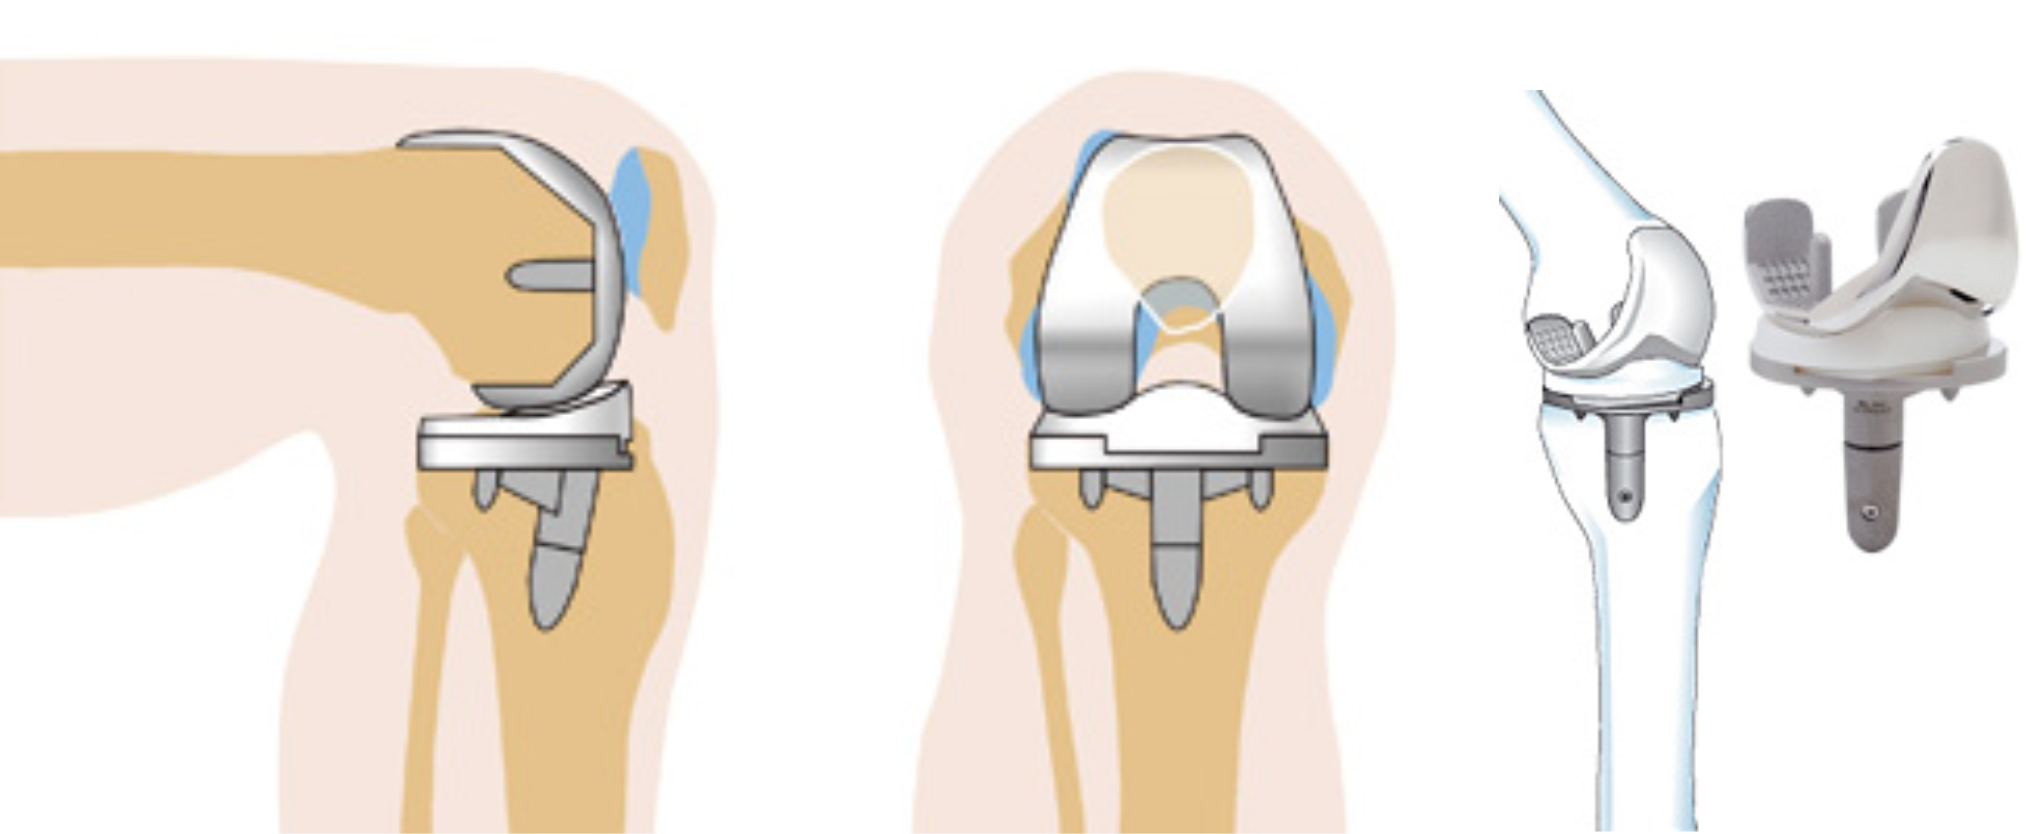 Операции на коленном суставе стоимость. Эндопротез коленного сустава. Тотальное эндопротезирование коленного сустава DEPUY. Эндопротезирование коленного сустава этапы операции. Артроз коленного сустава эндопротез.